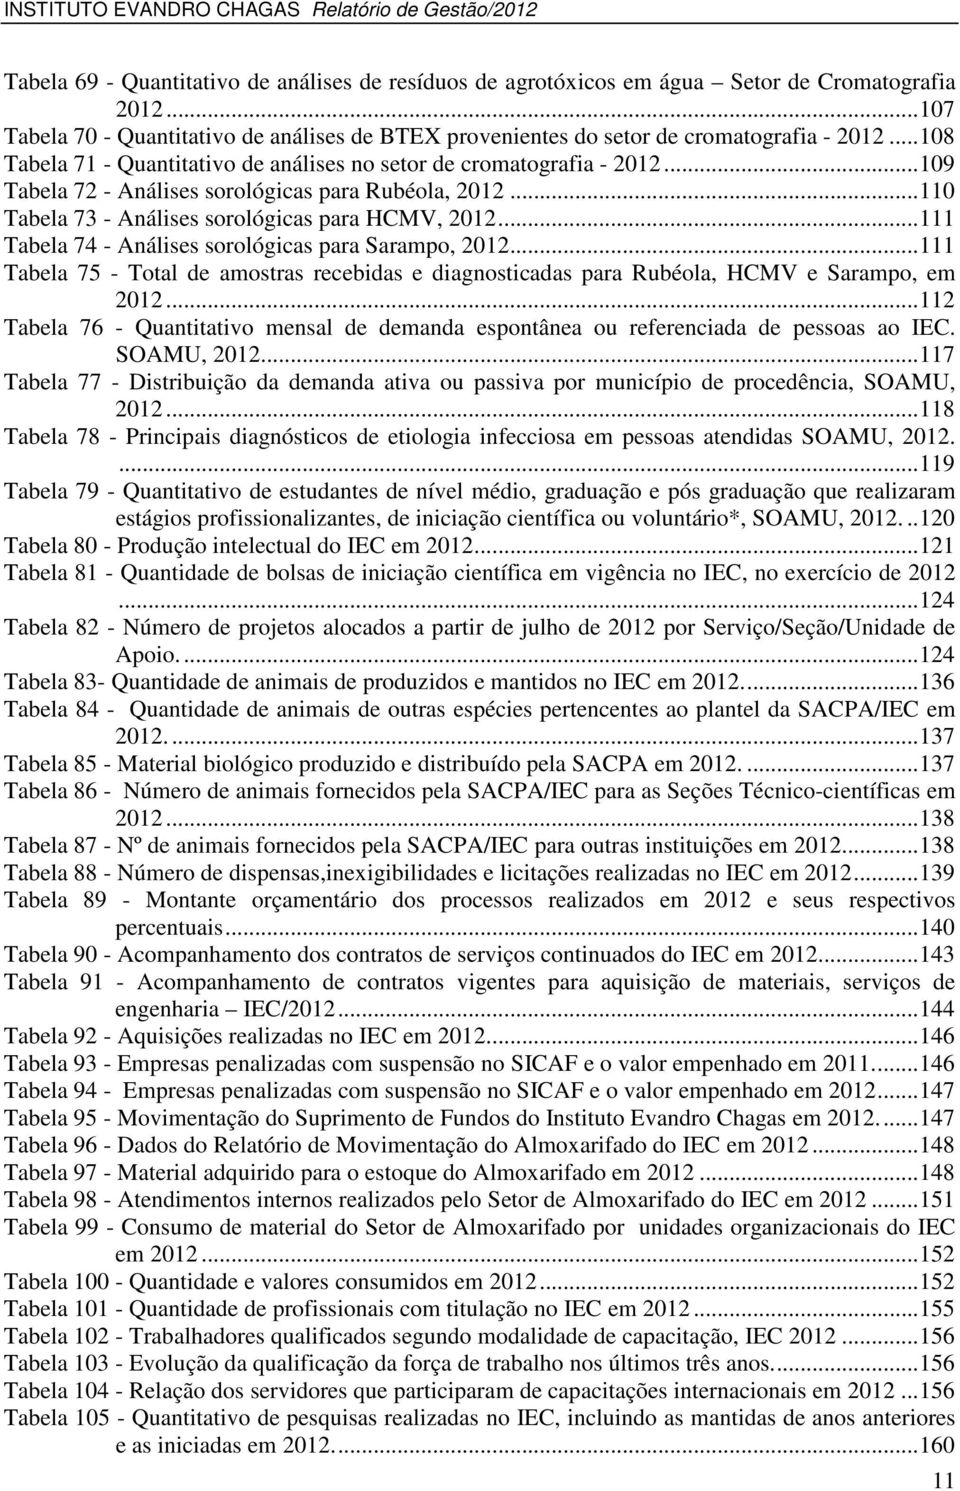 .. 111 Tabela 74 - Análises sorológicas para Sarampo, 2012... 111 Tabela 75 - Total de amostras recebidas e diagnosticadas para Rubéola, HCMV e Sarampo, em 2012.